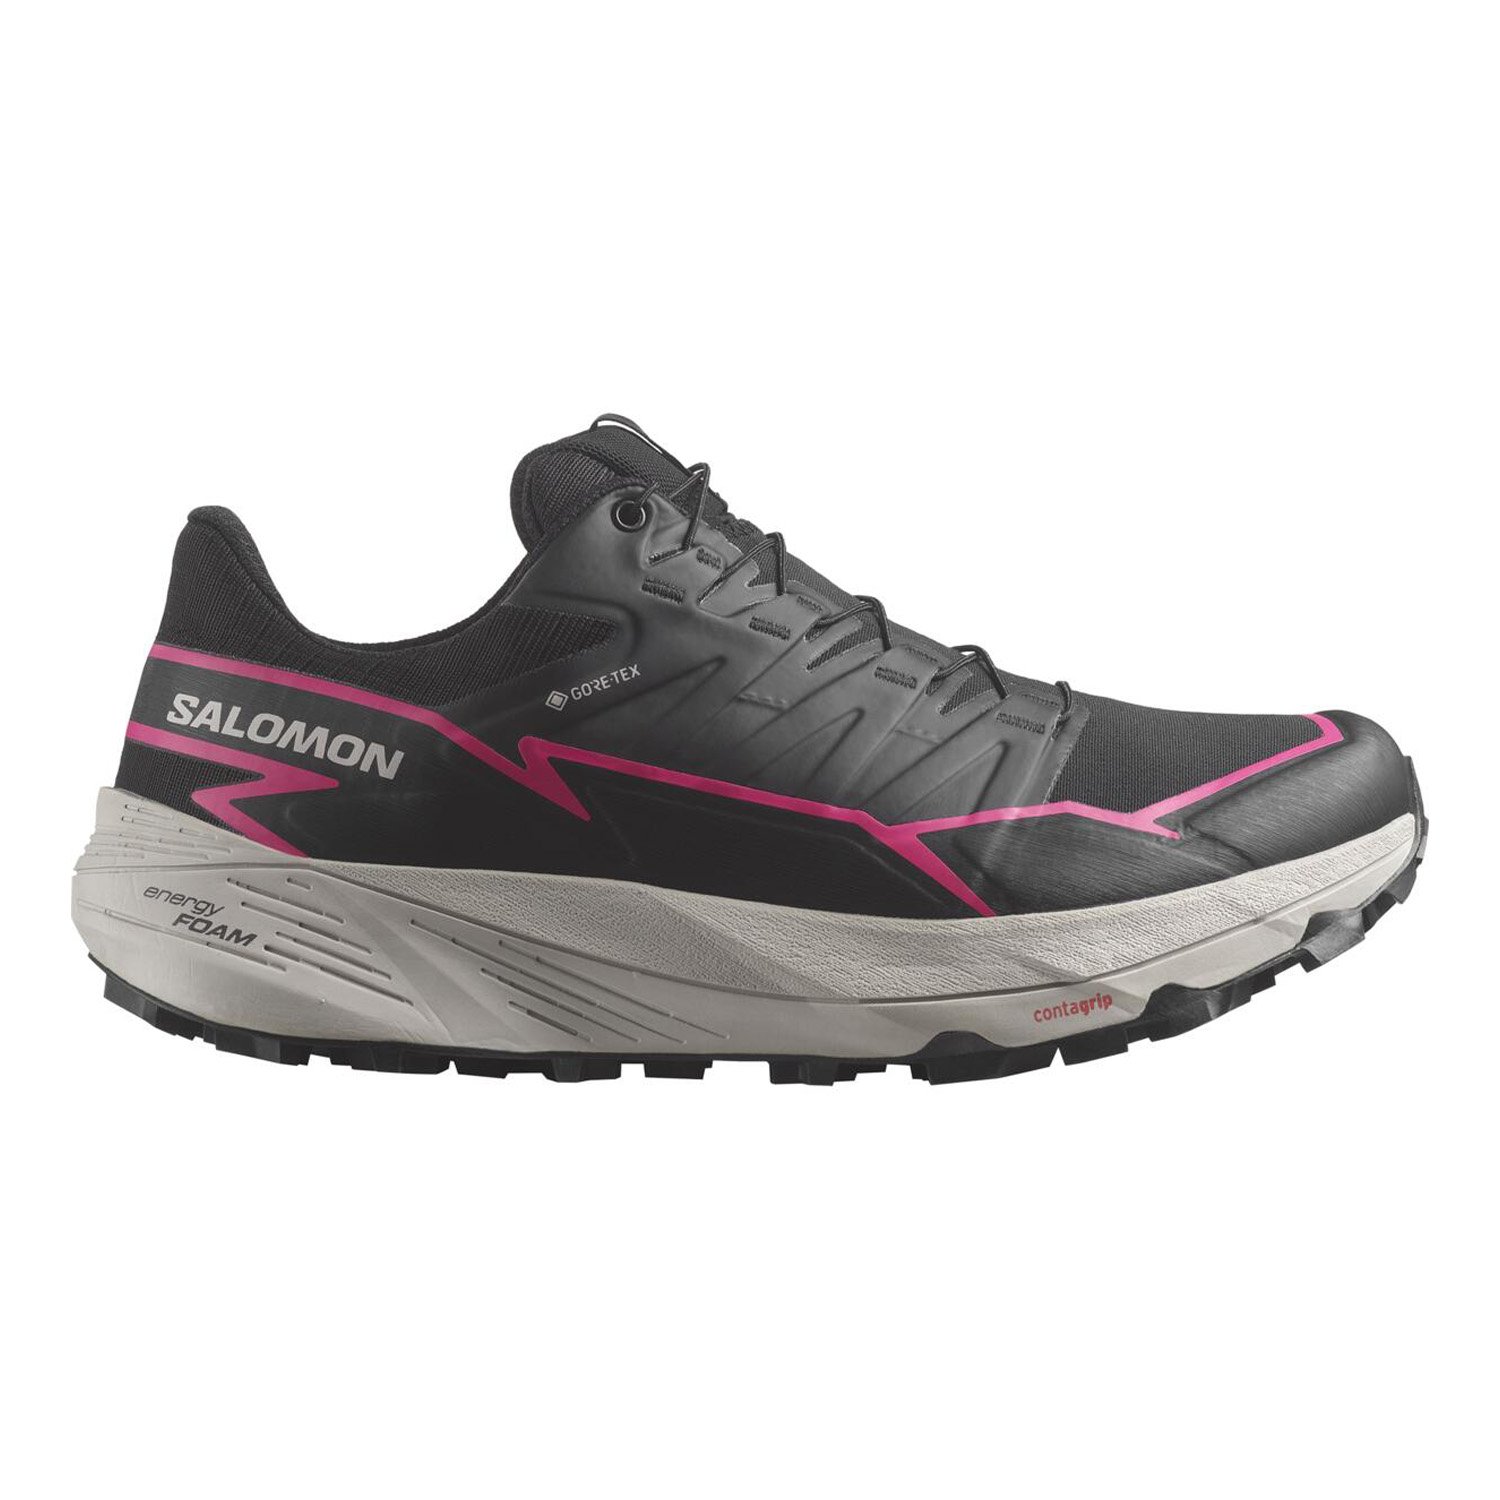 Salomon Thundercross Gore-Tex Kadın Patika Koşu Ayakkabısı - Renkli - 1